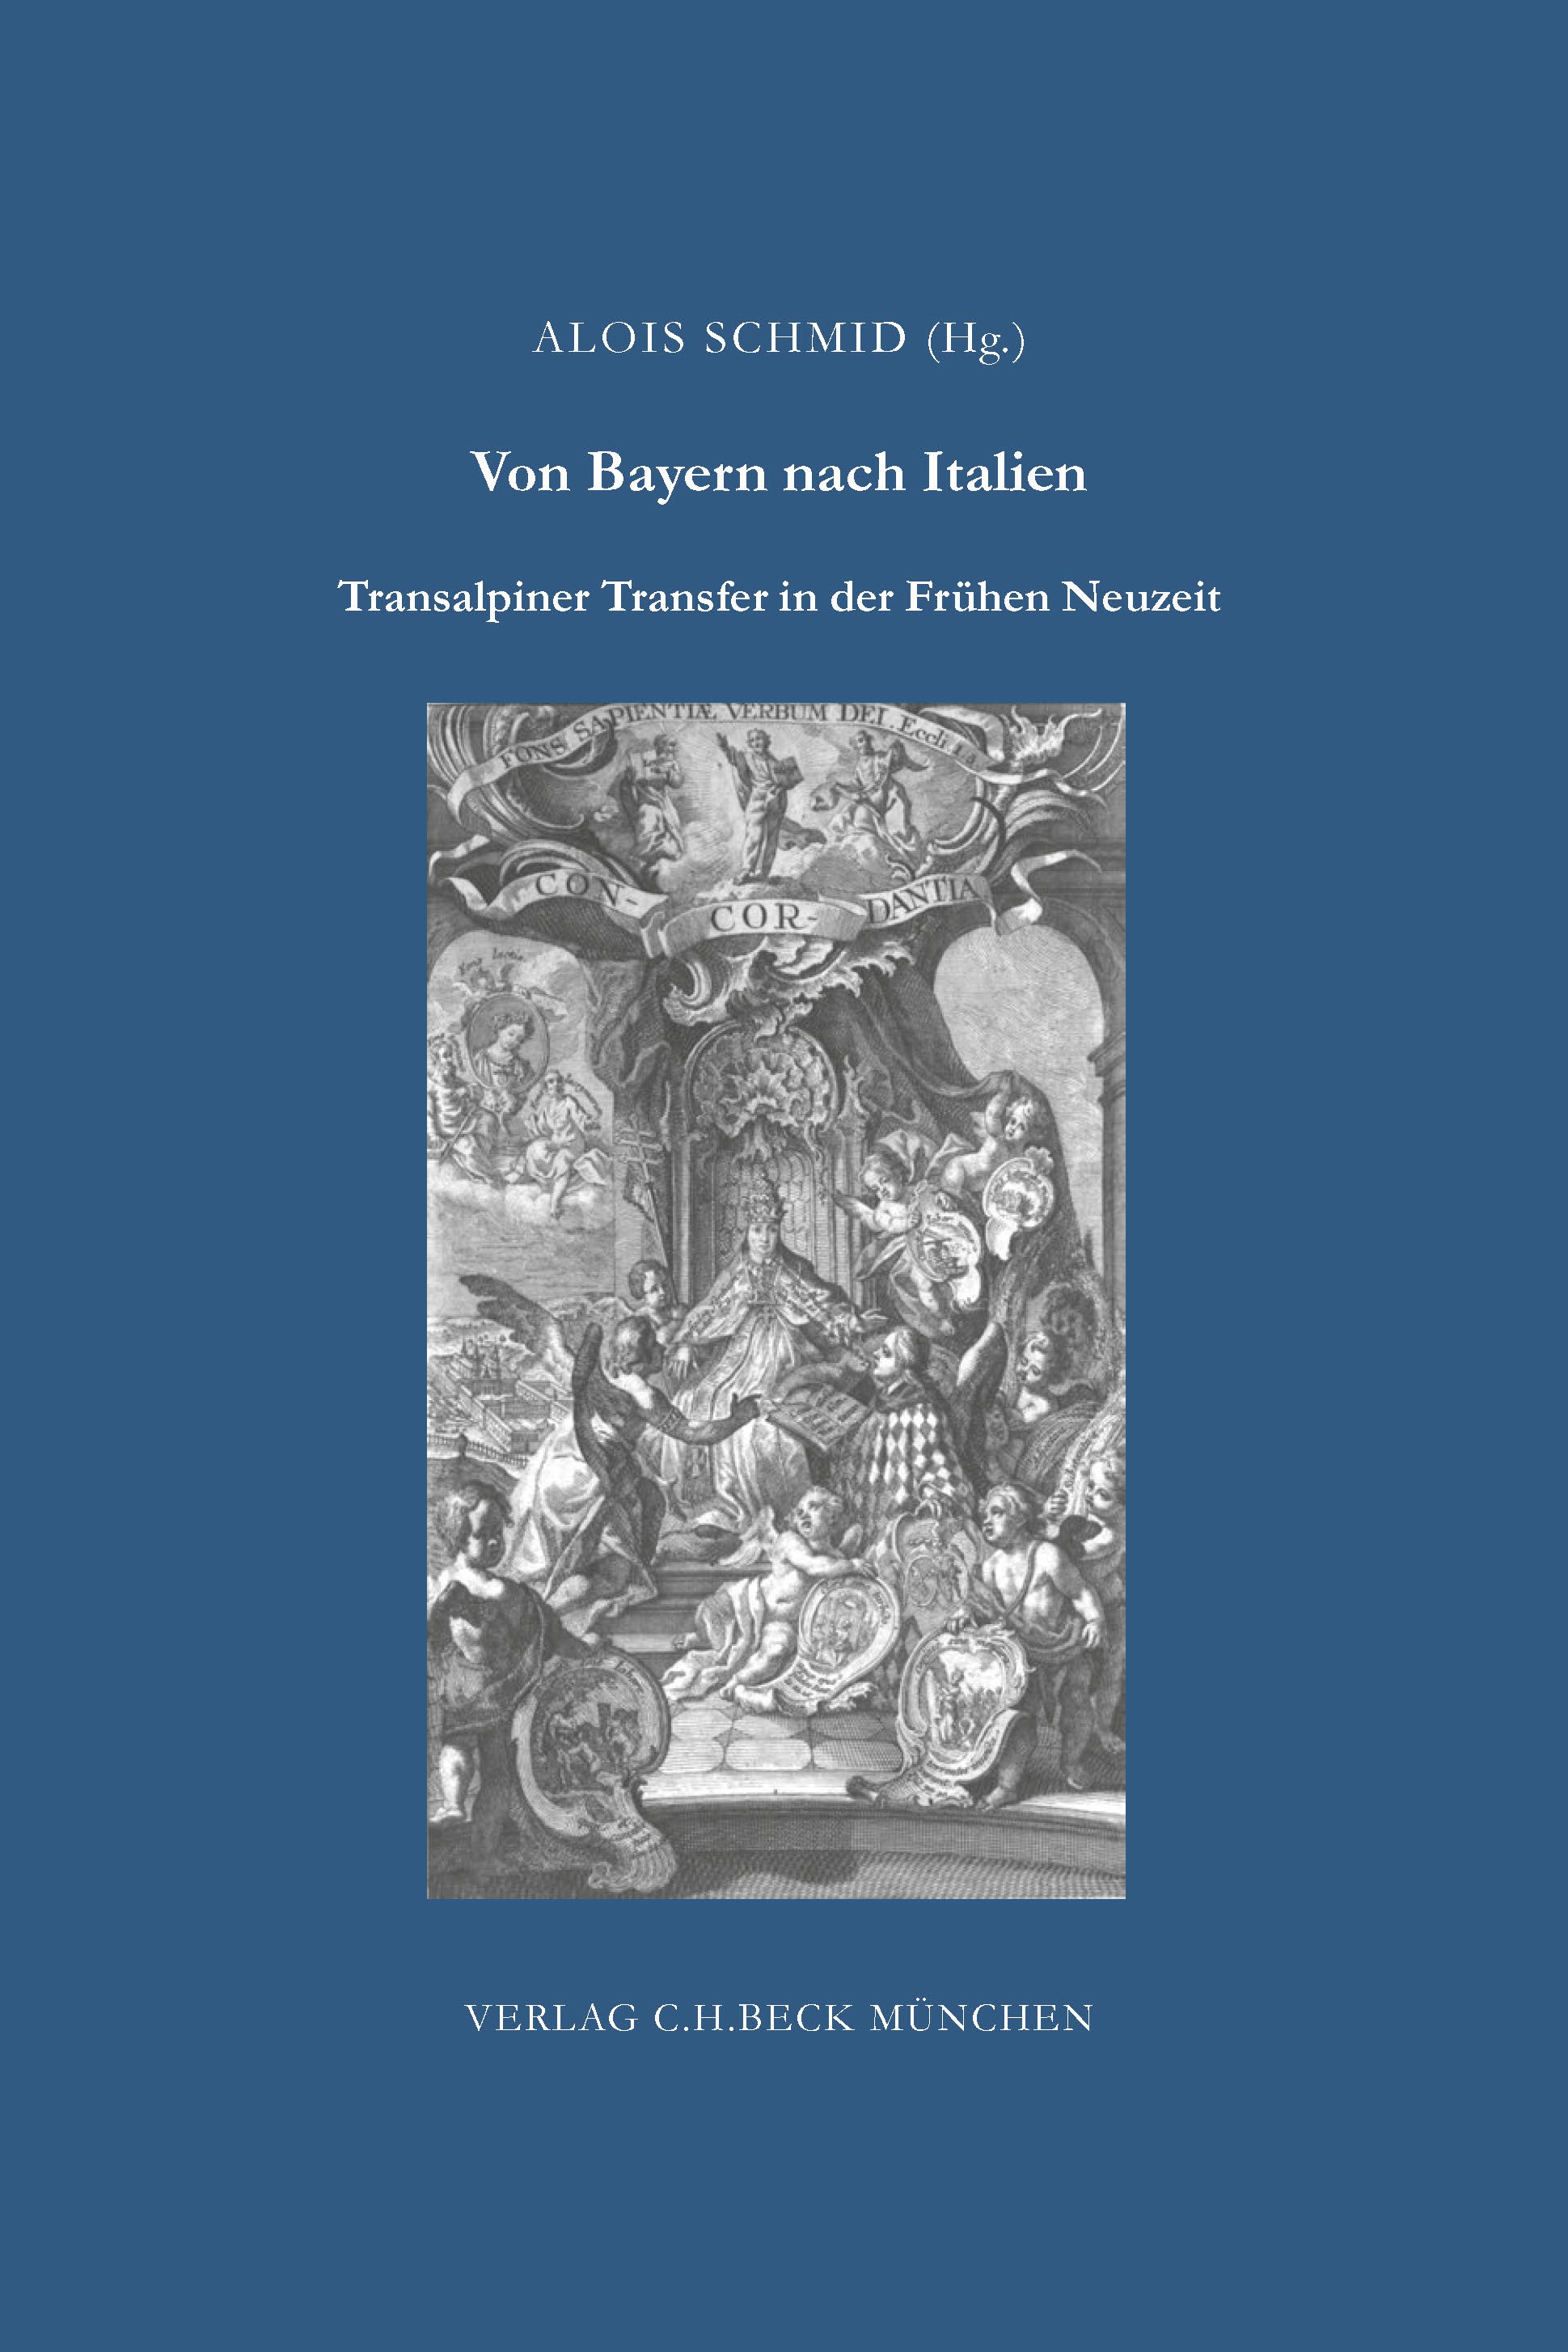 Cover: Schmid, Alois, Von Bayern nach Italien